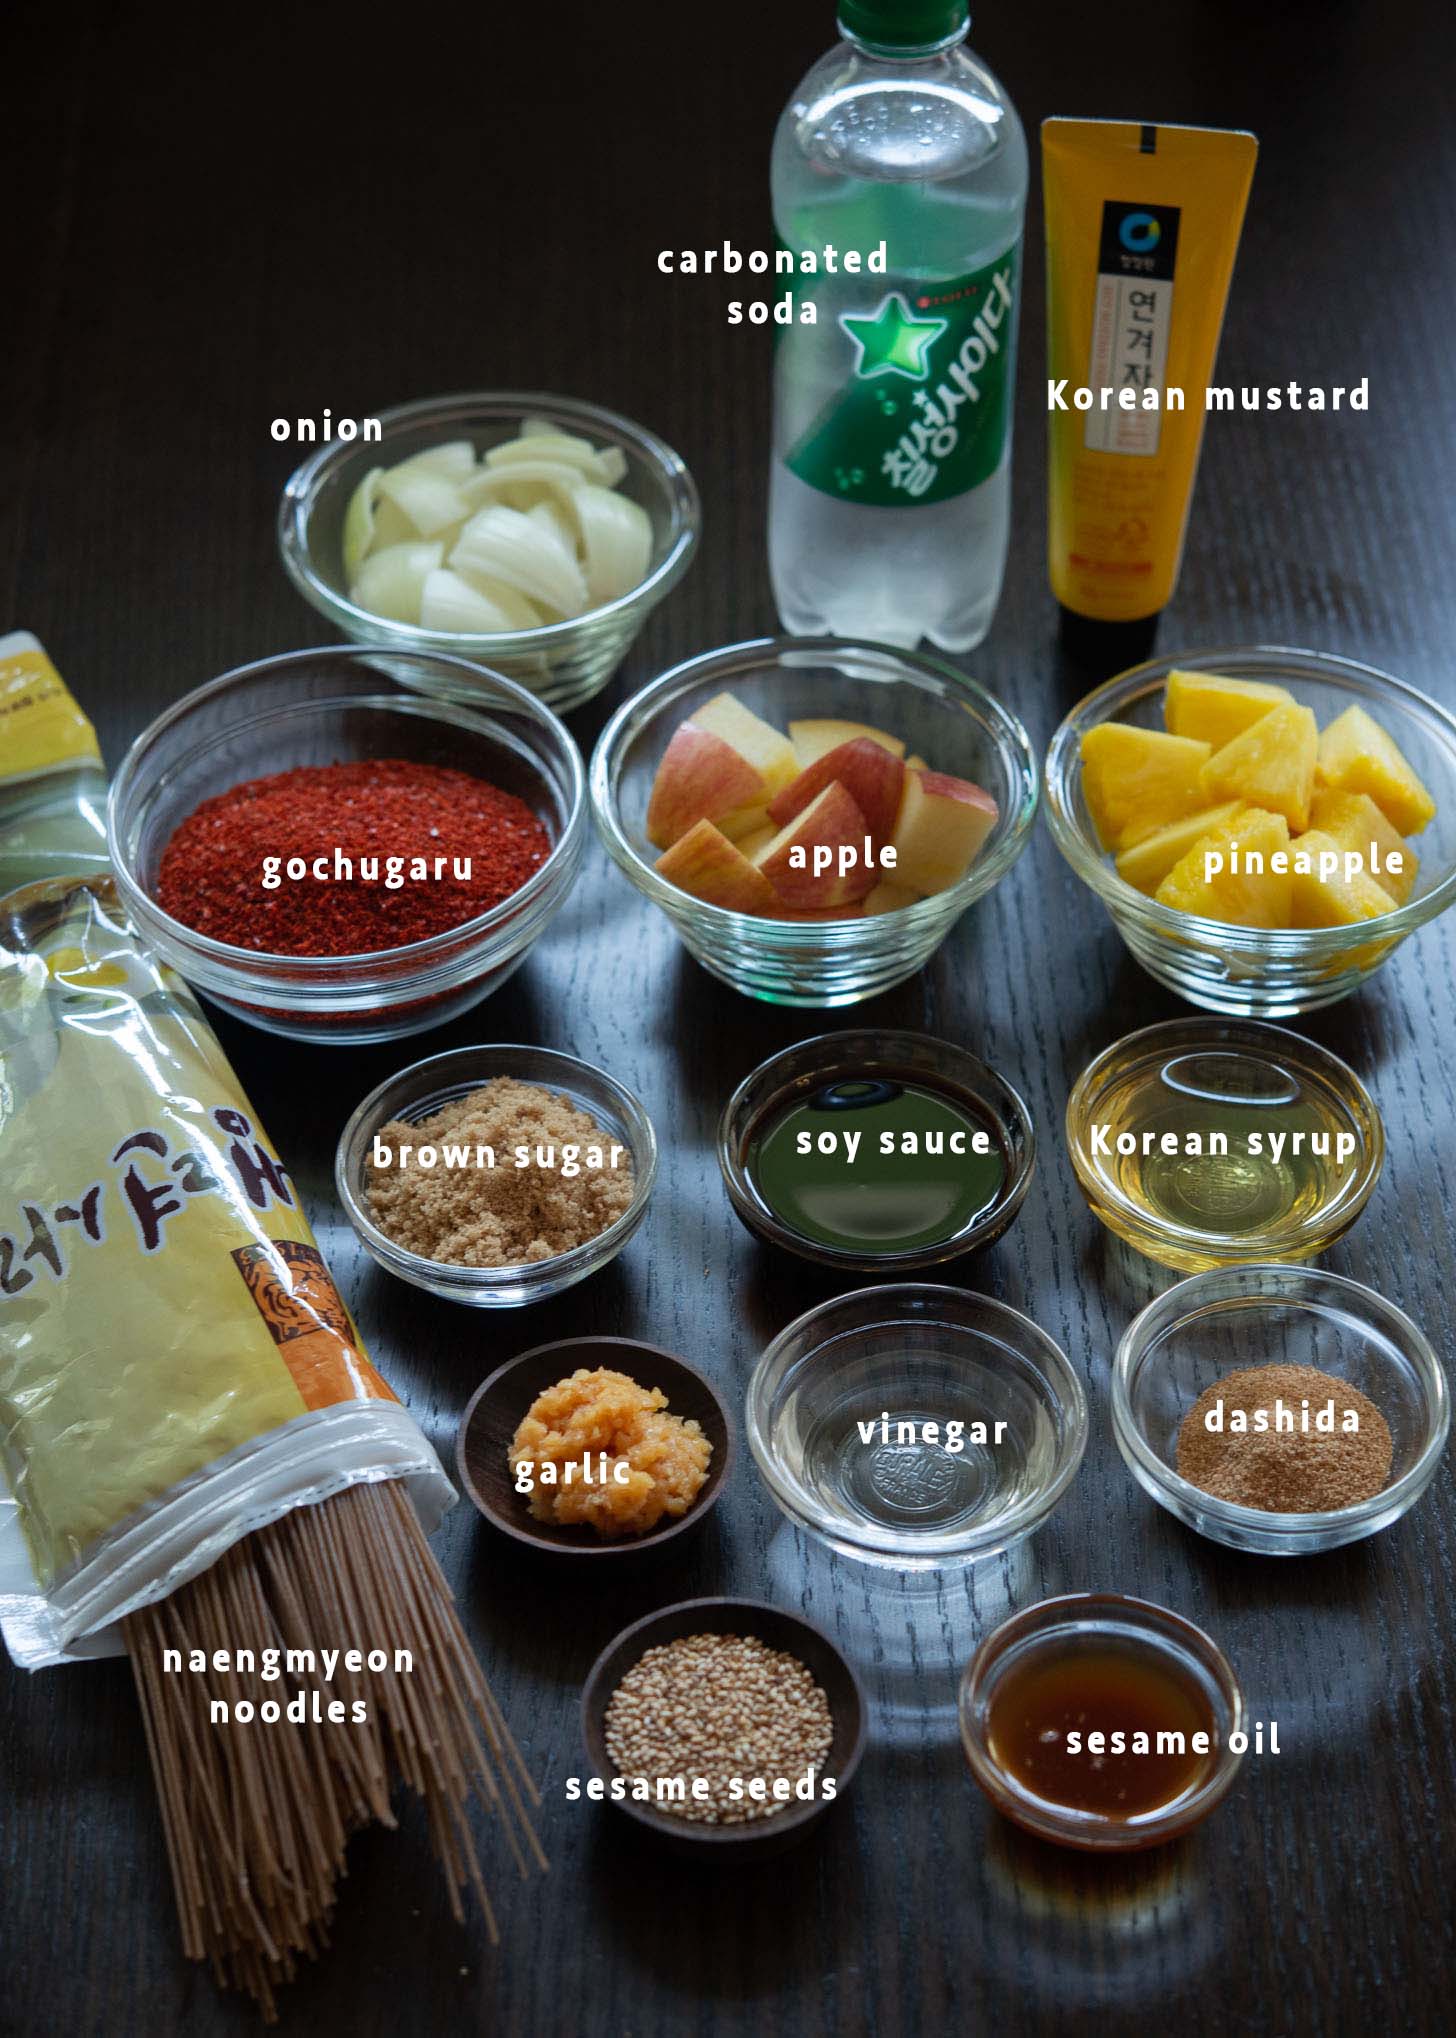 Bibim naengmyeon and sauce ingredients.